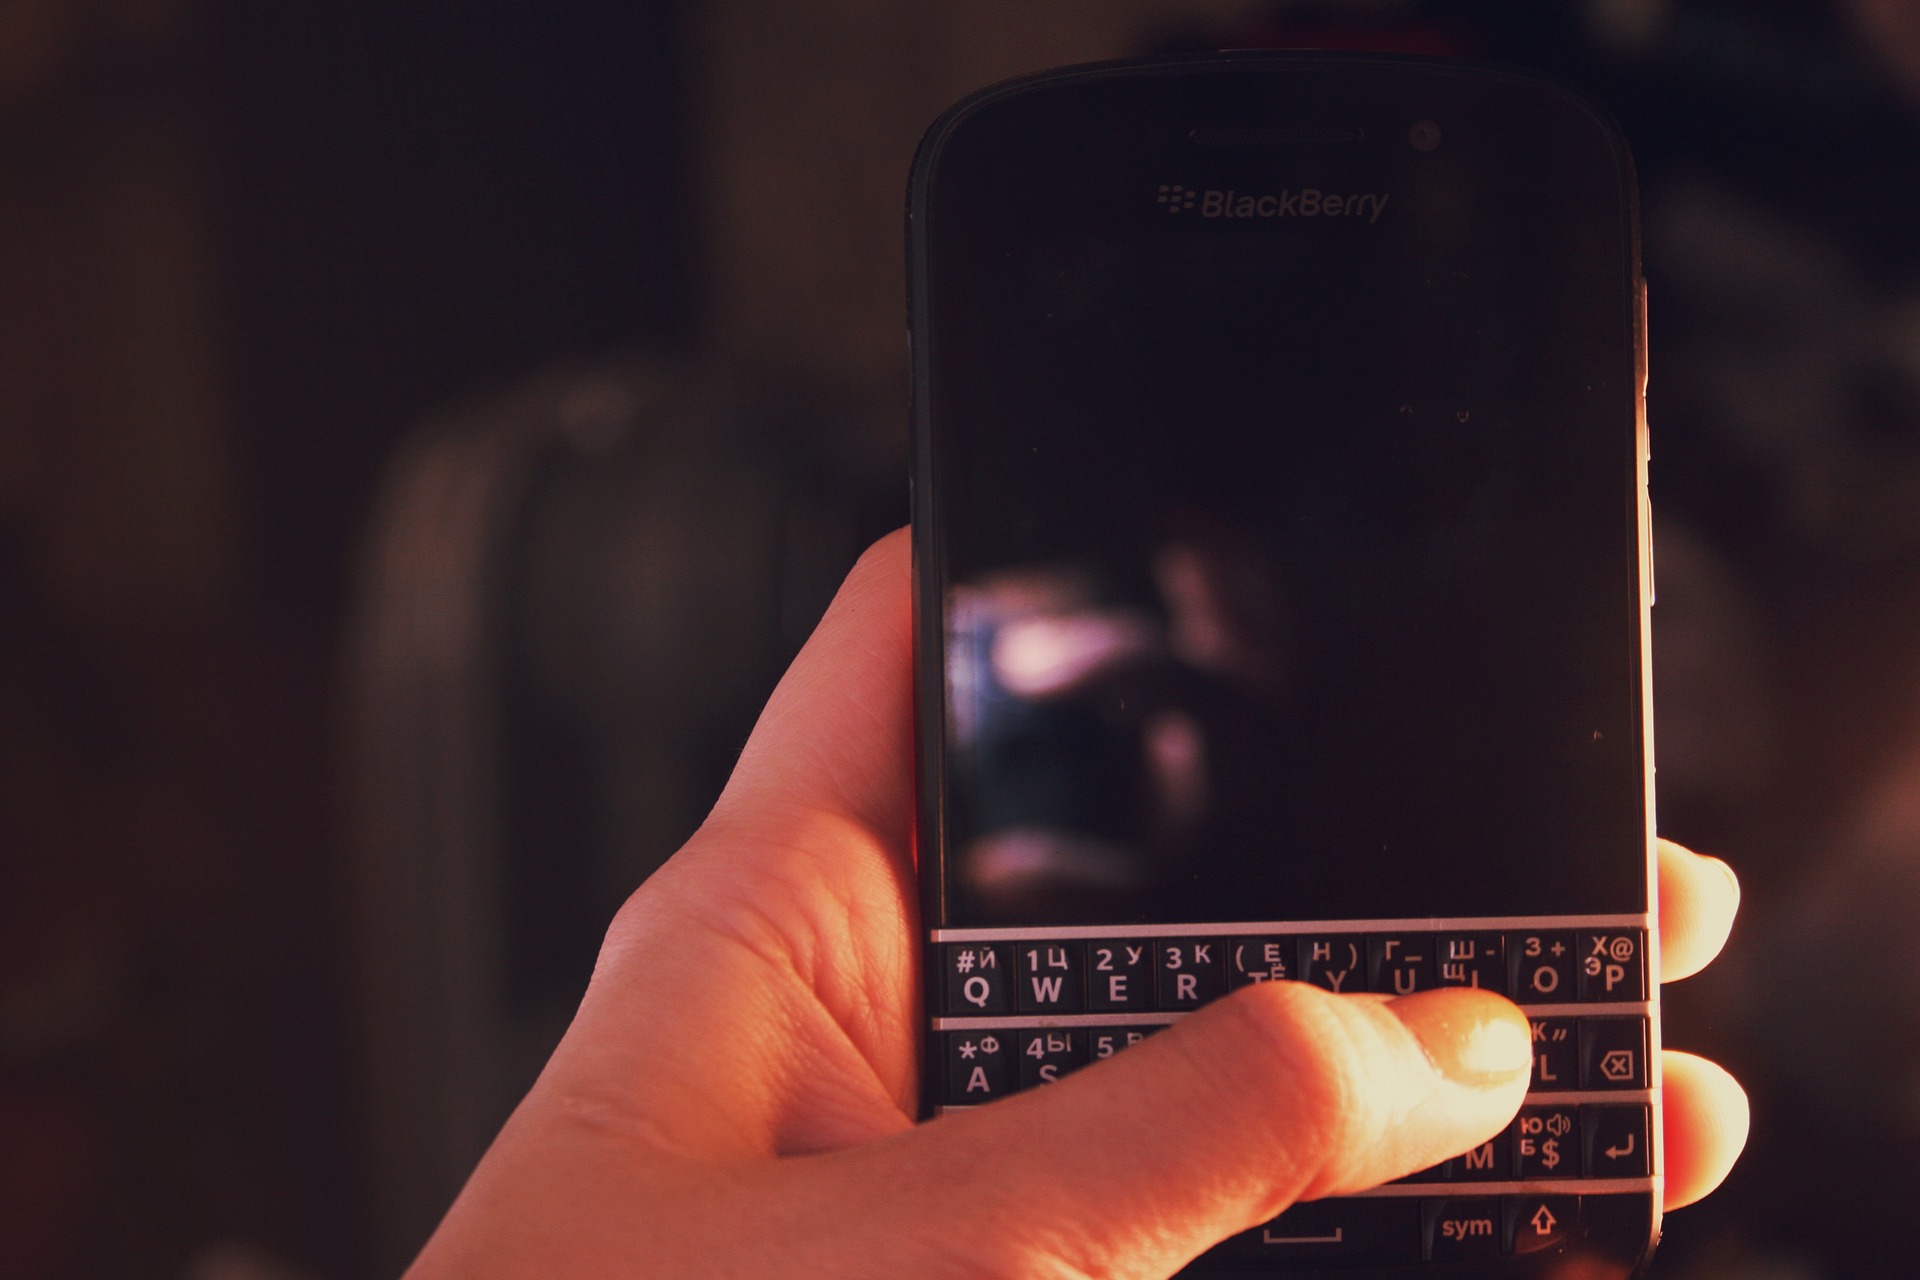  ¡Blackberry regresará este año con teléfonos 5G y su distintivo teclado!